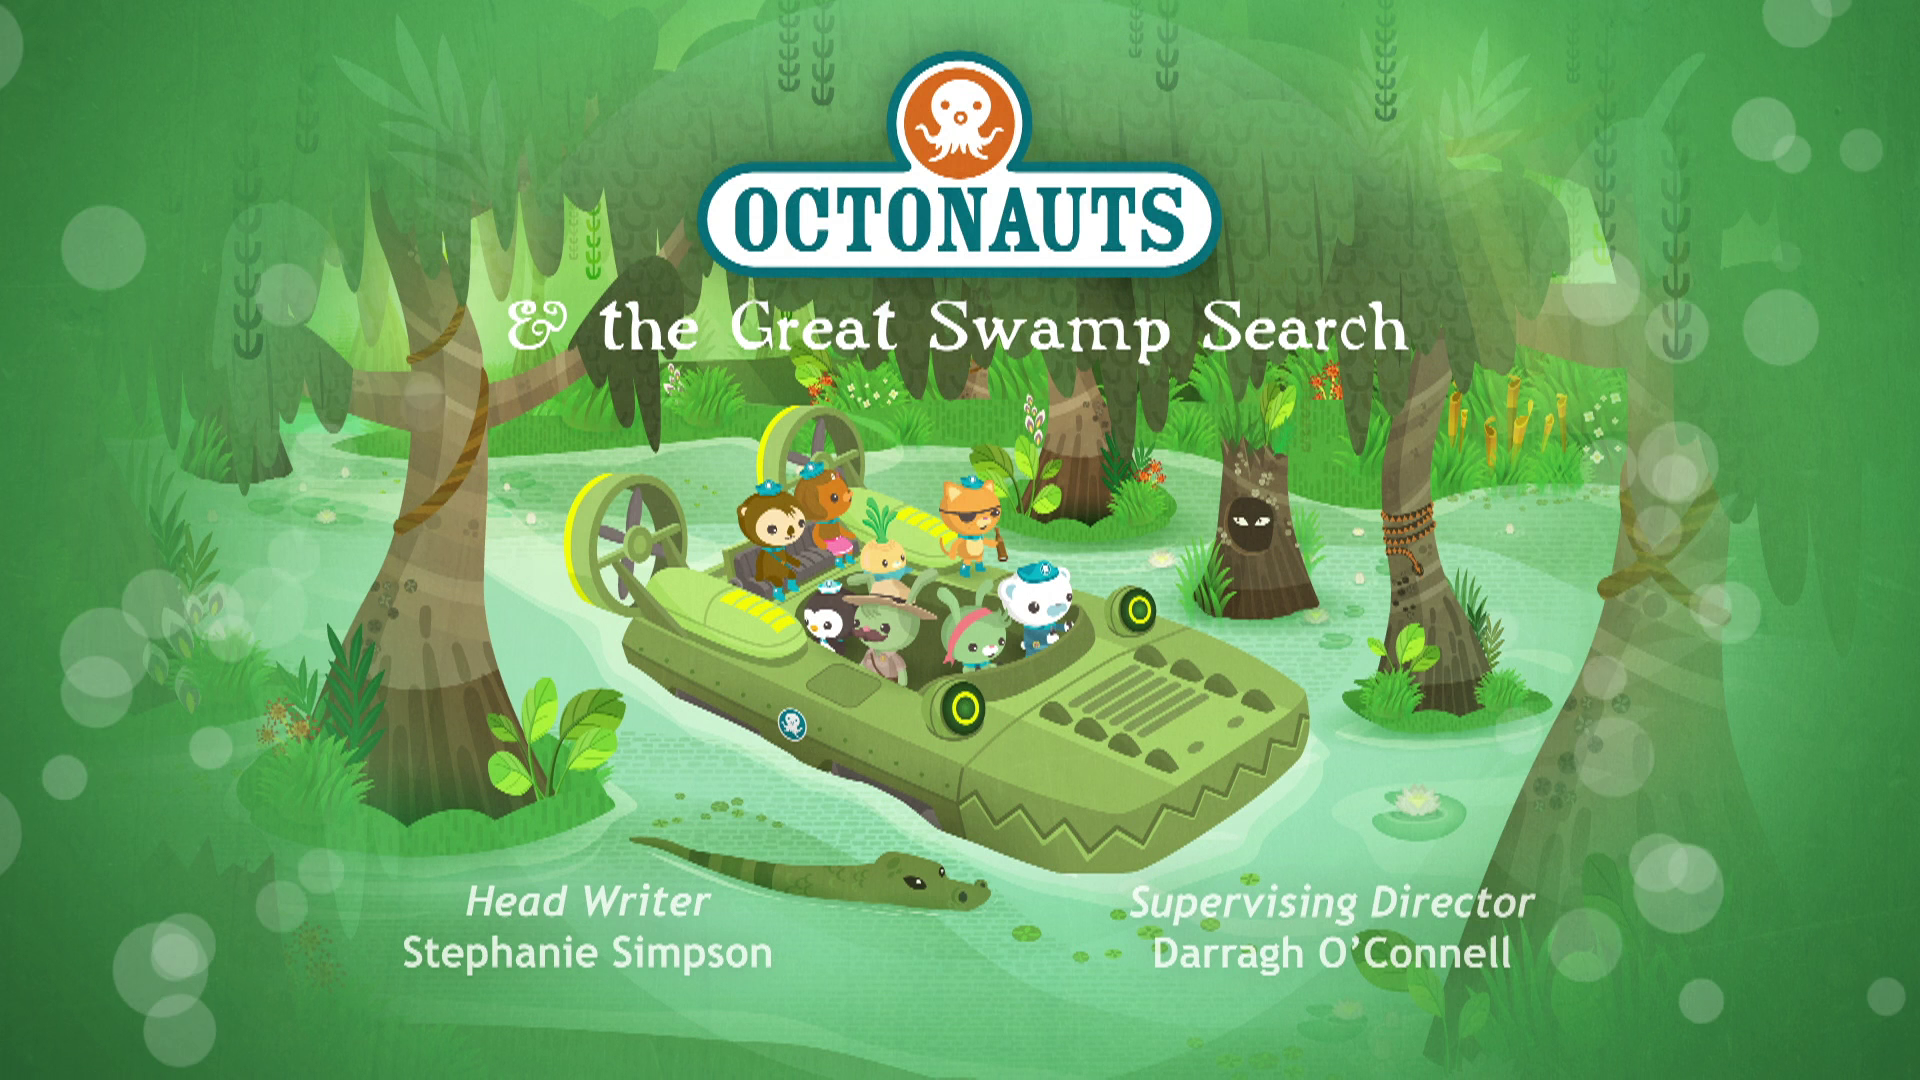 Octonauts - Underwater Jungle, Full Episodes